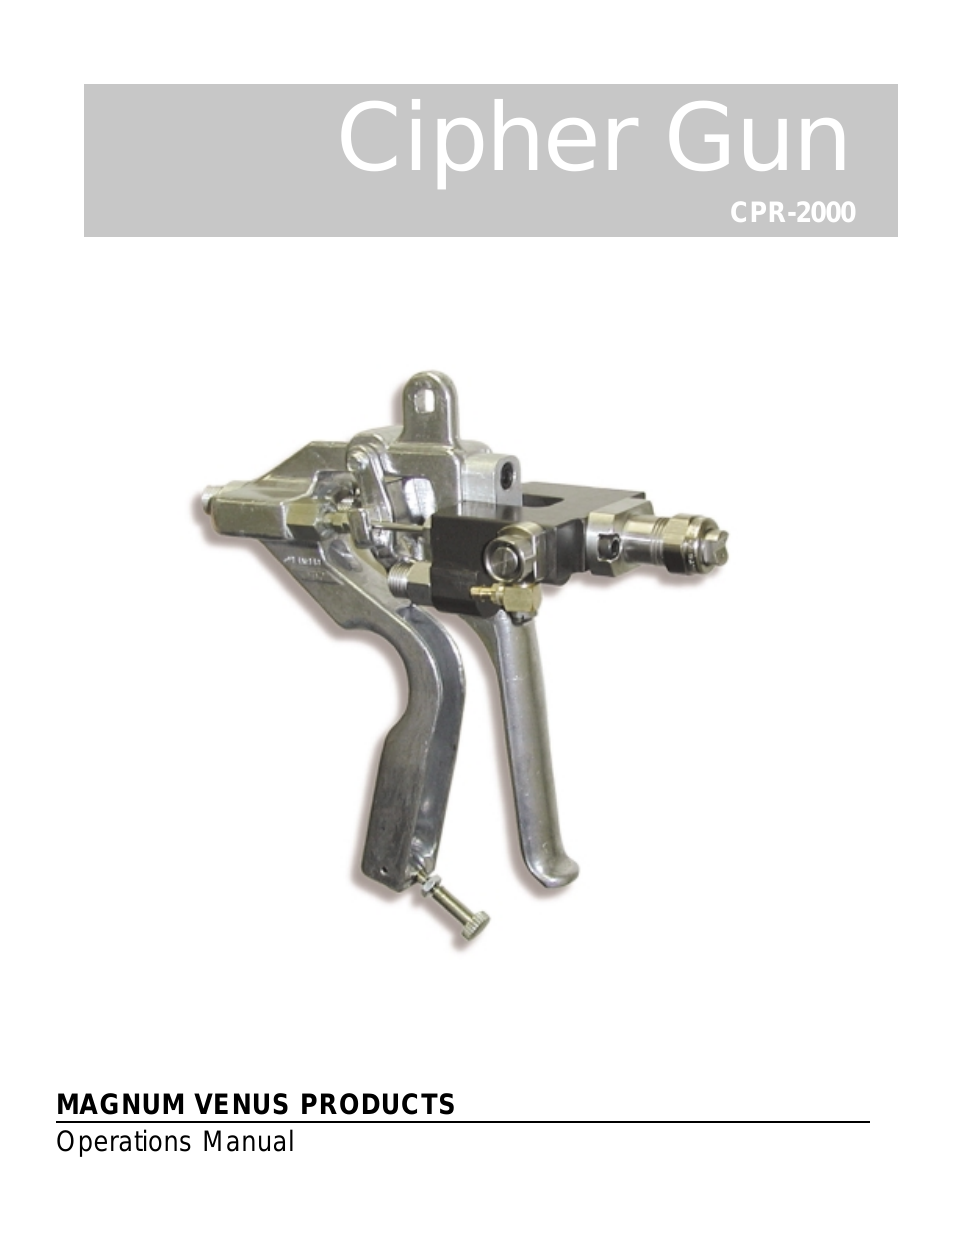 CPR-2000 Cipher Gun